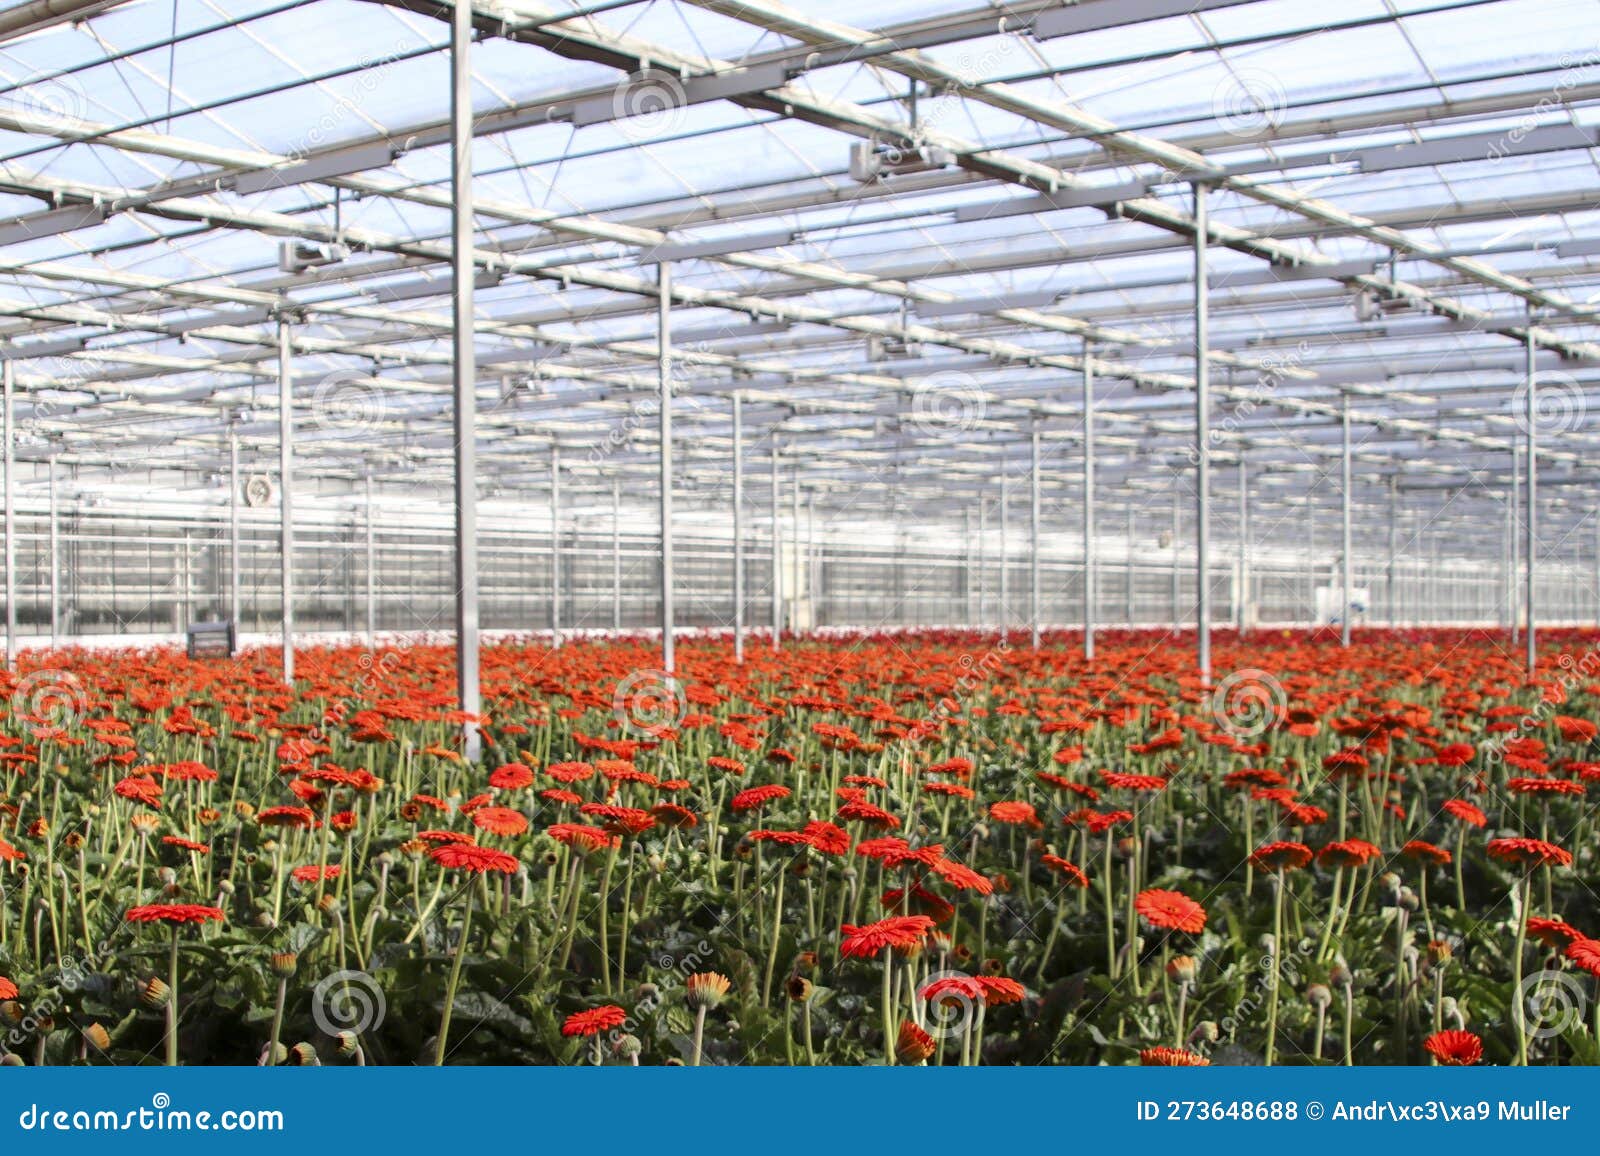 greenhouse led bellaza gerbera glass growing horticulture lights nieuwerkerk aan den ijssel orange red